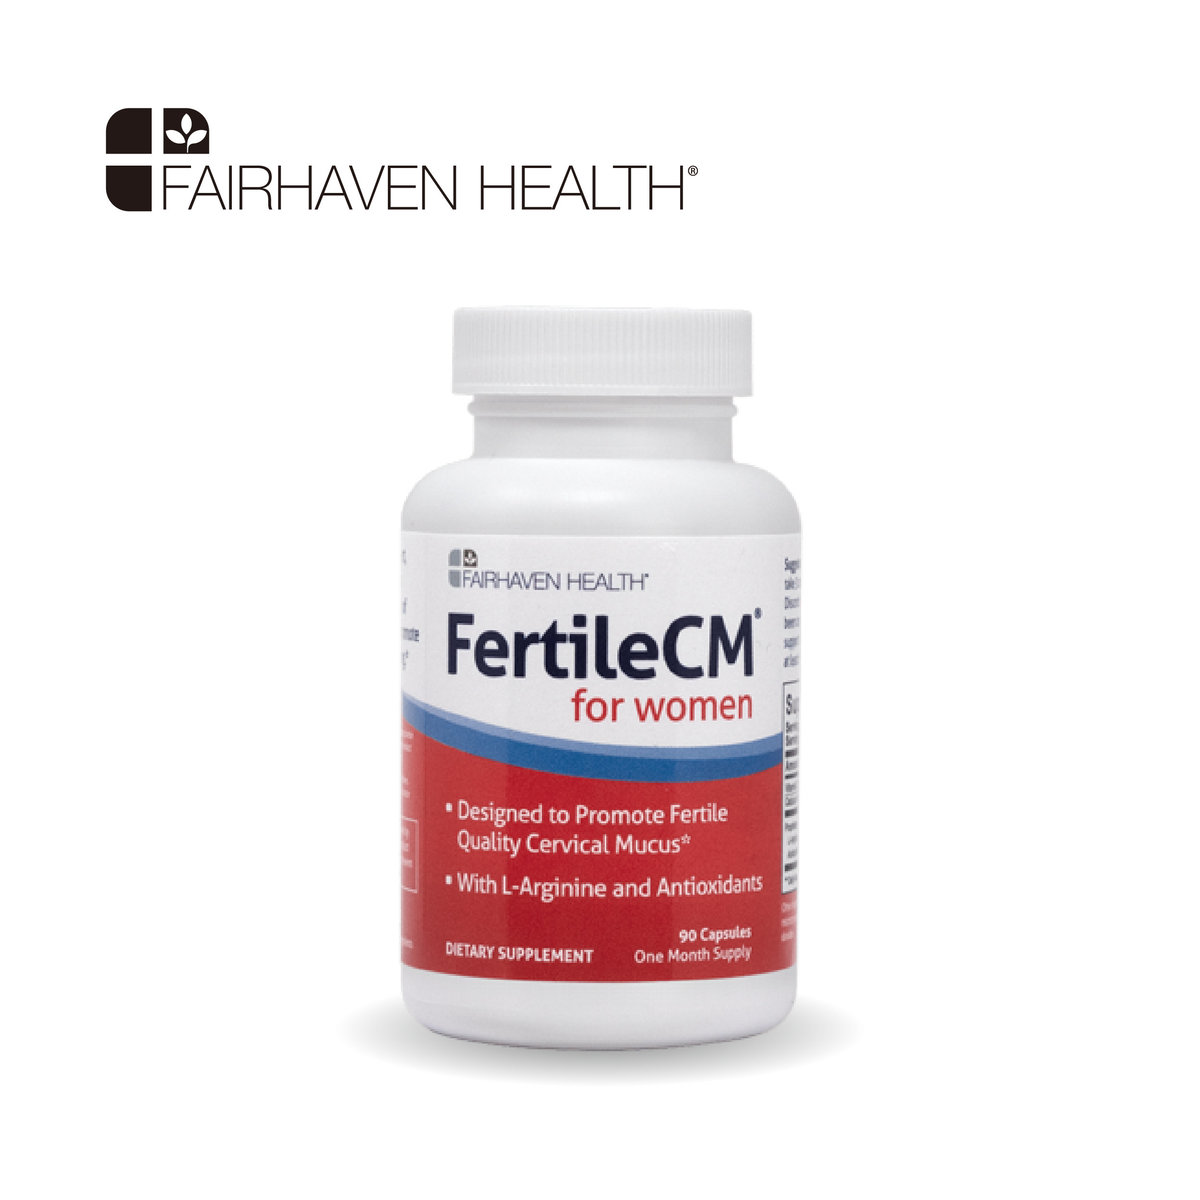 Fairhaven Health Fertilecm for women Sản phẩm tăng độ dày niêm mạc tử cung